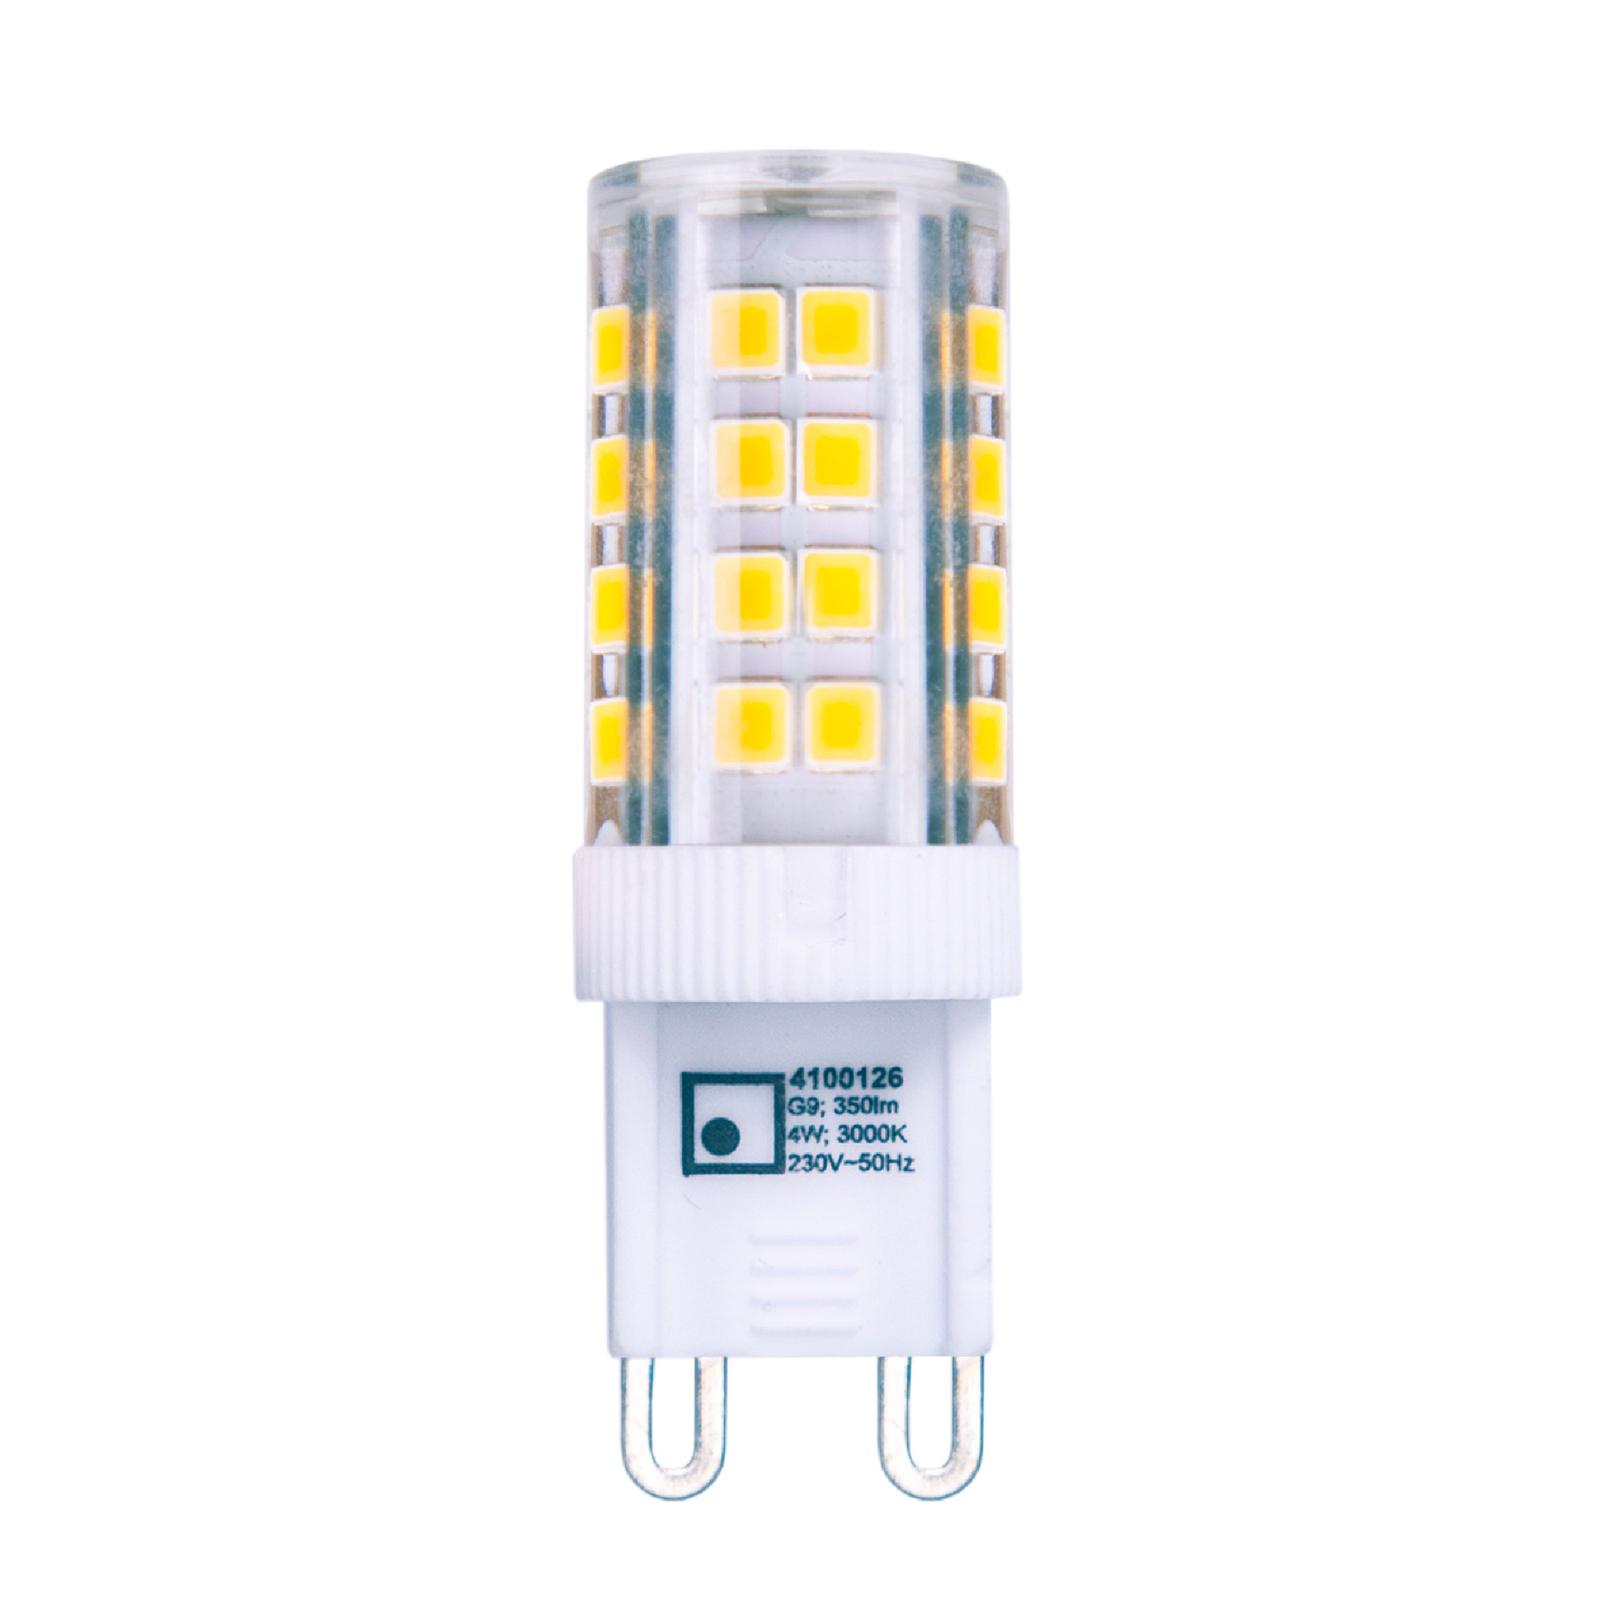 Kolíková LED G9 3,5W teplá biela 350 lm 6 kusov